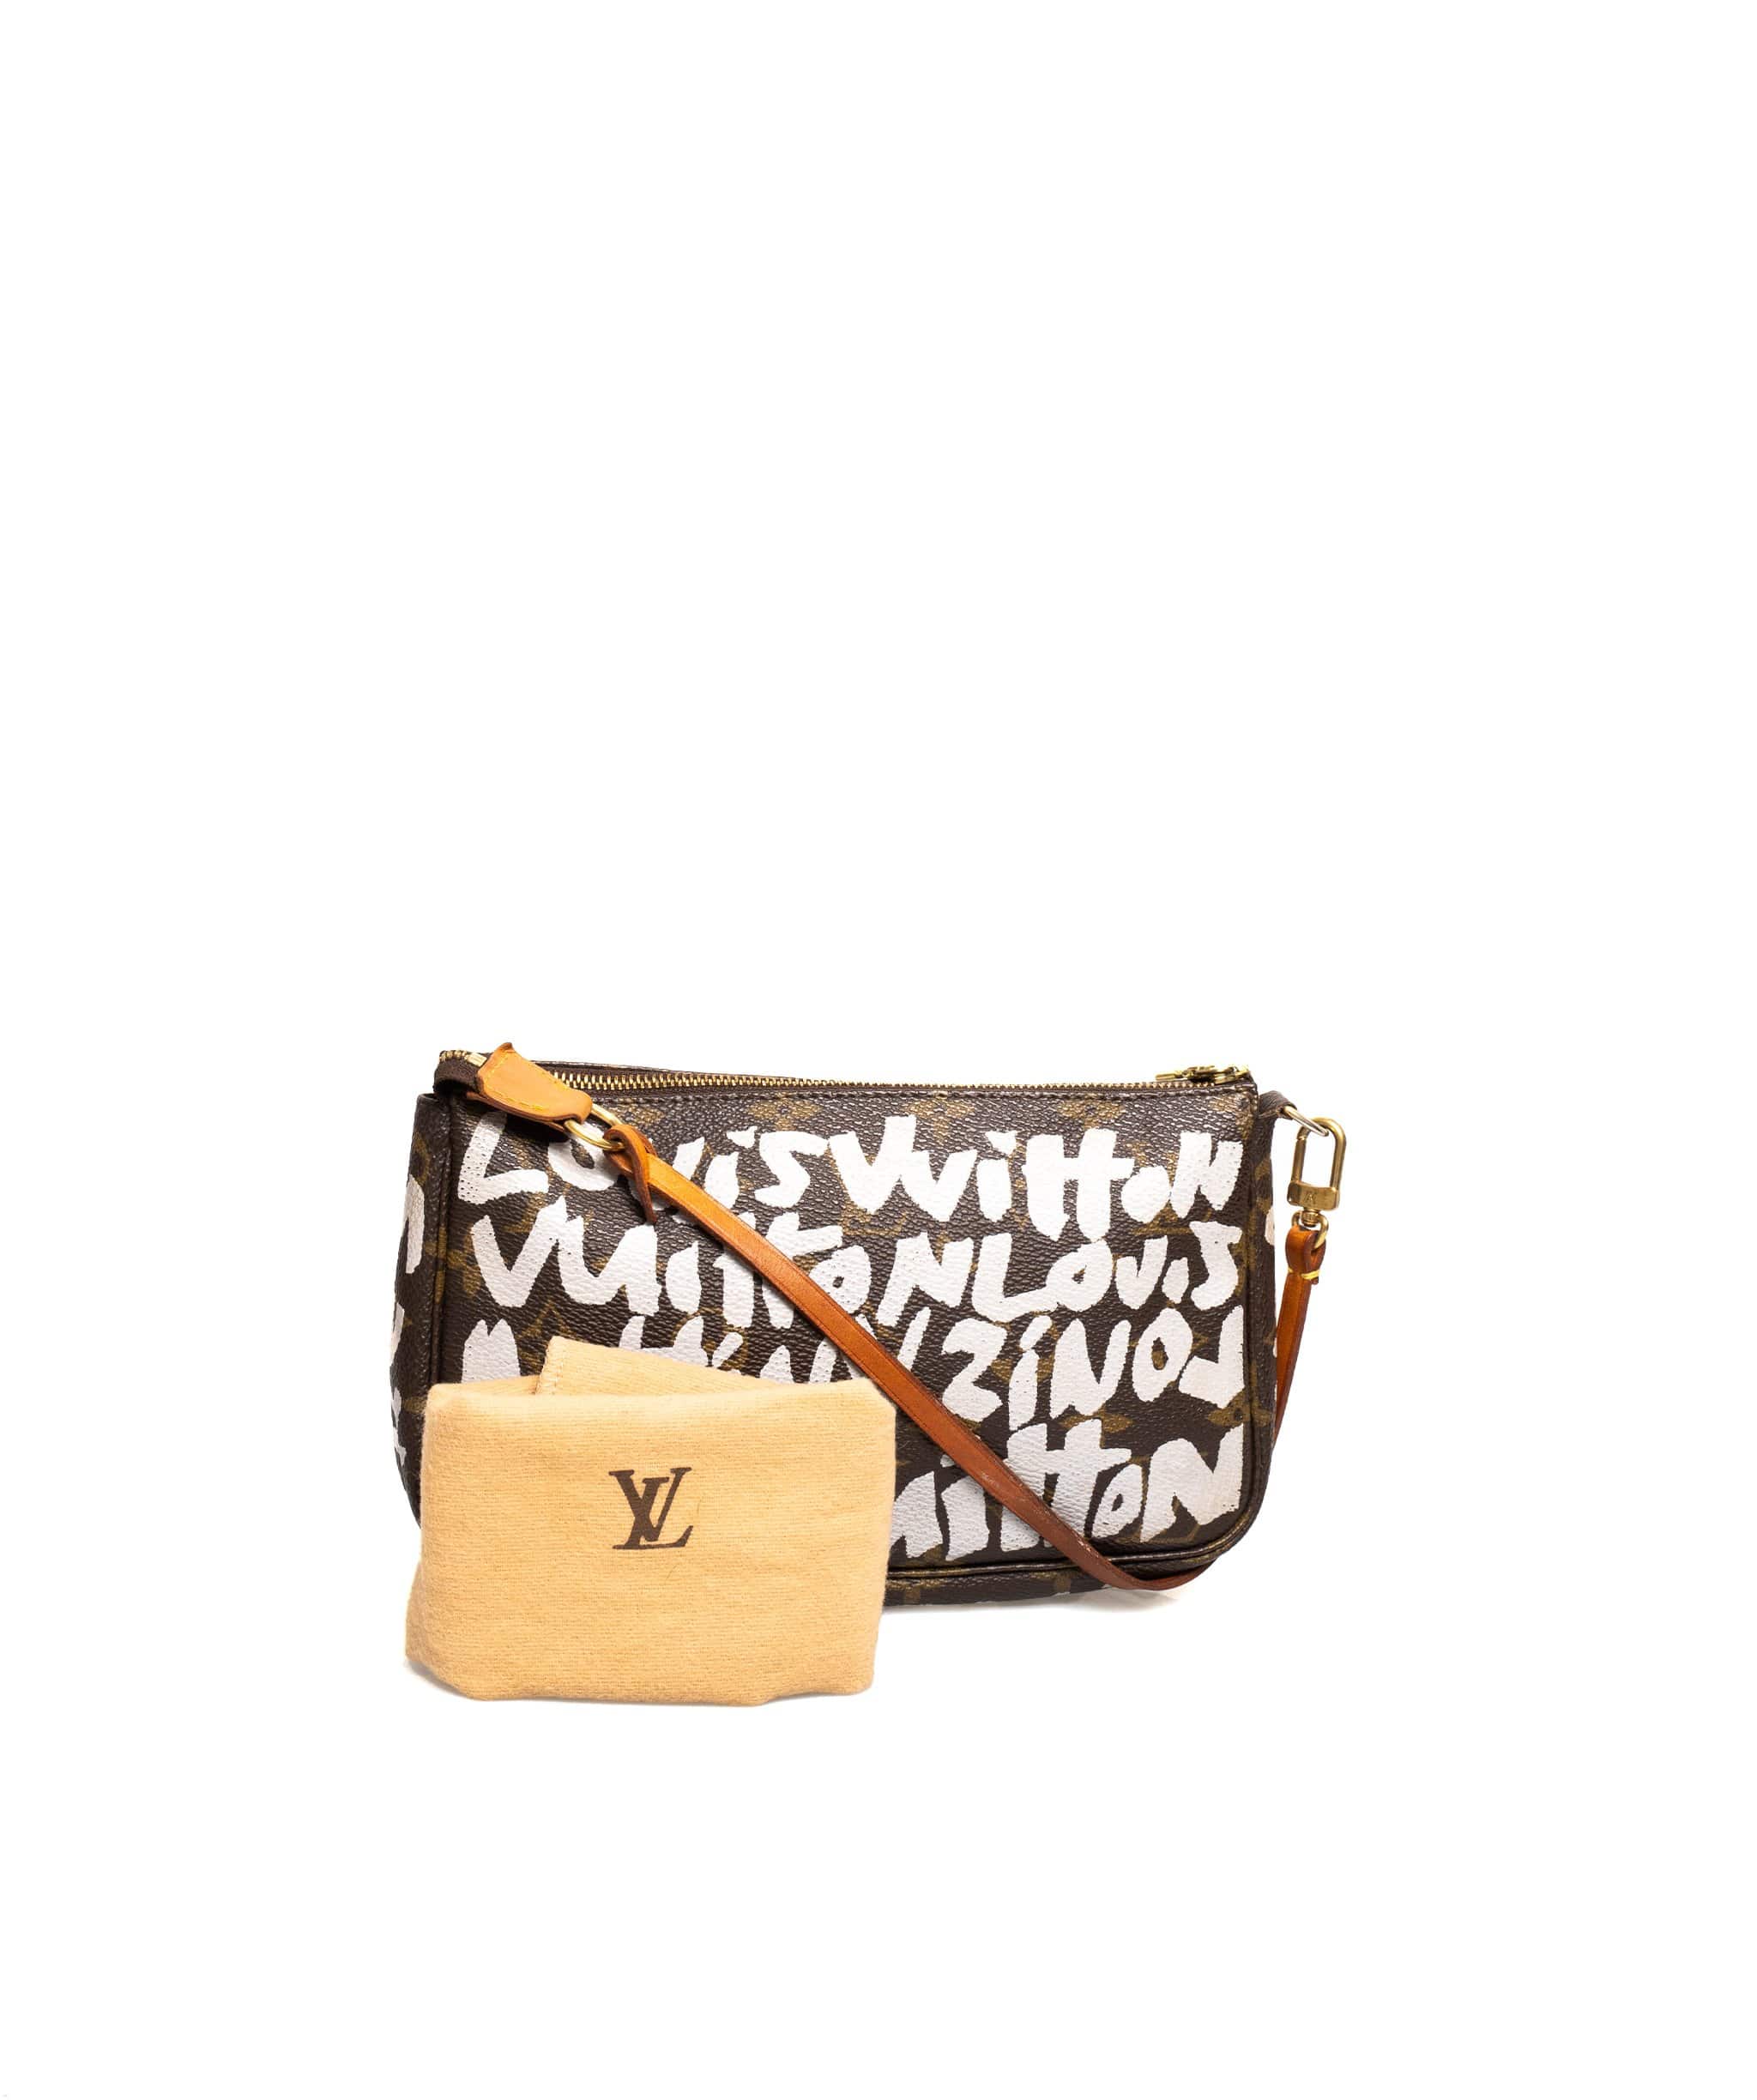 LuxuryPromise Louis Vuitton Stephen Sprouse Bag - ADL1566